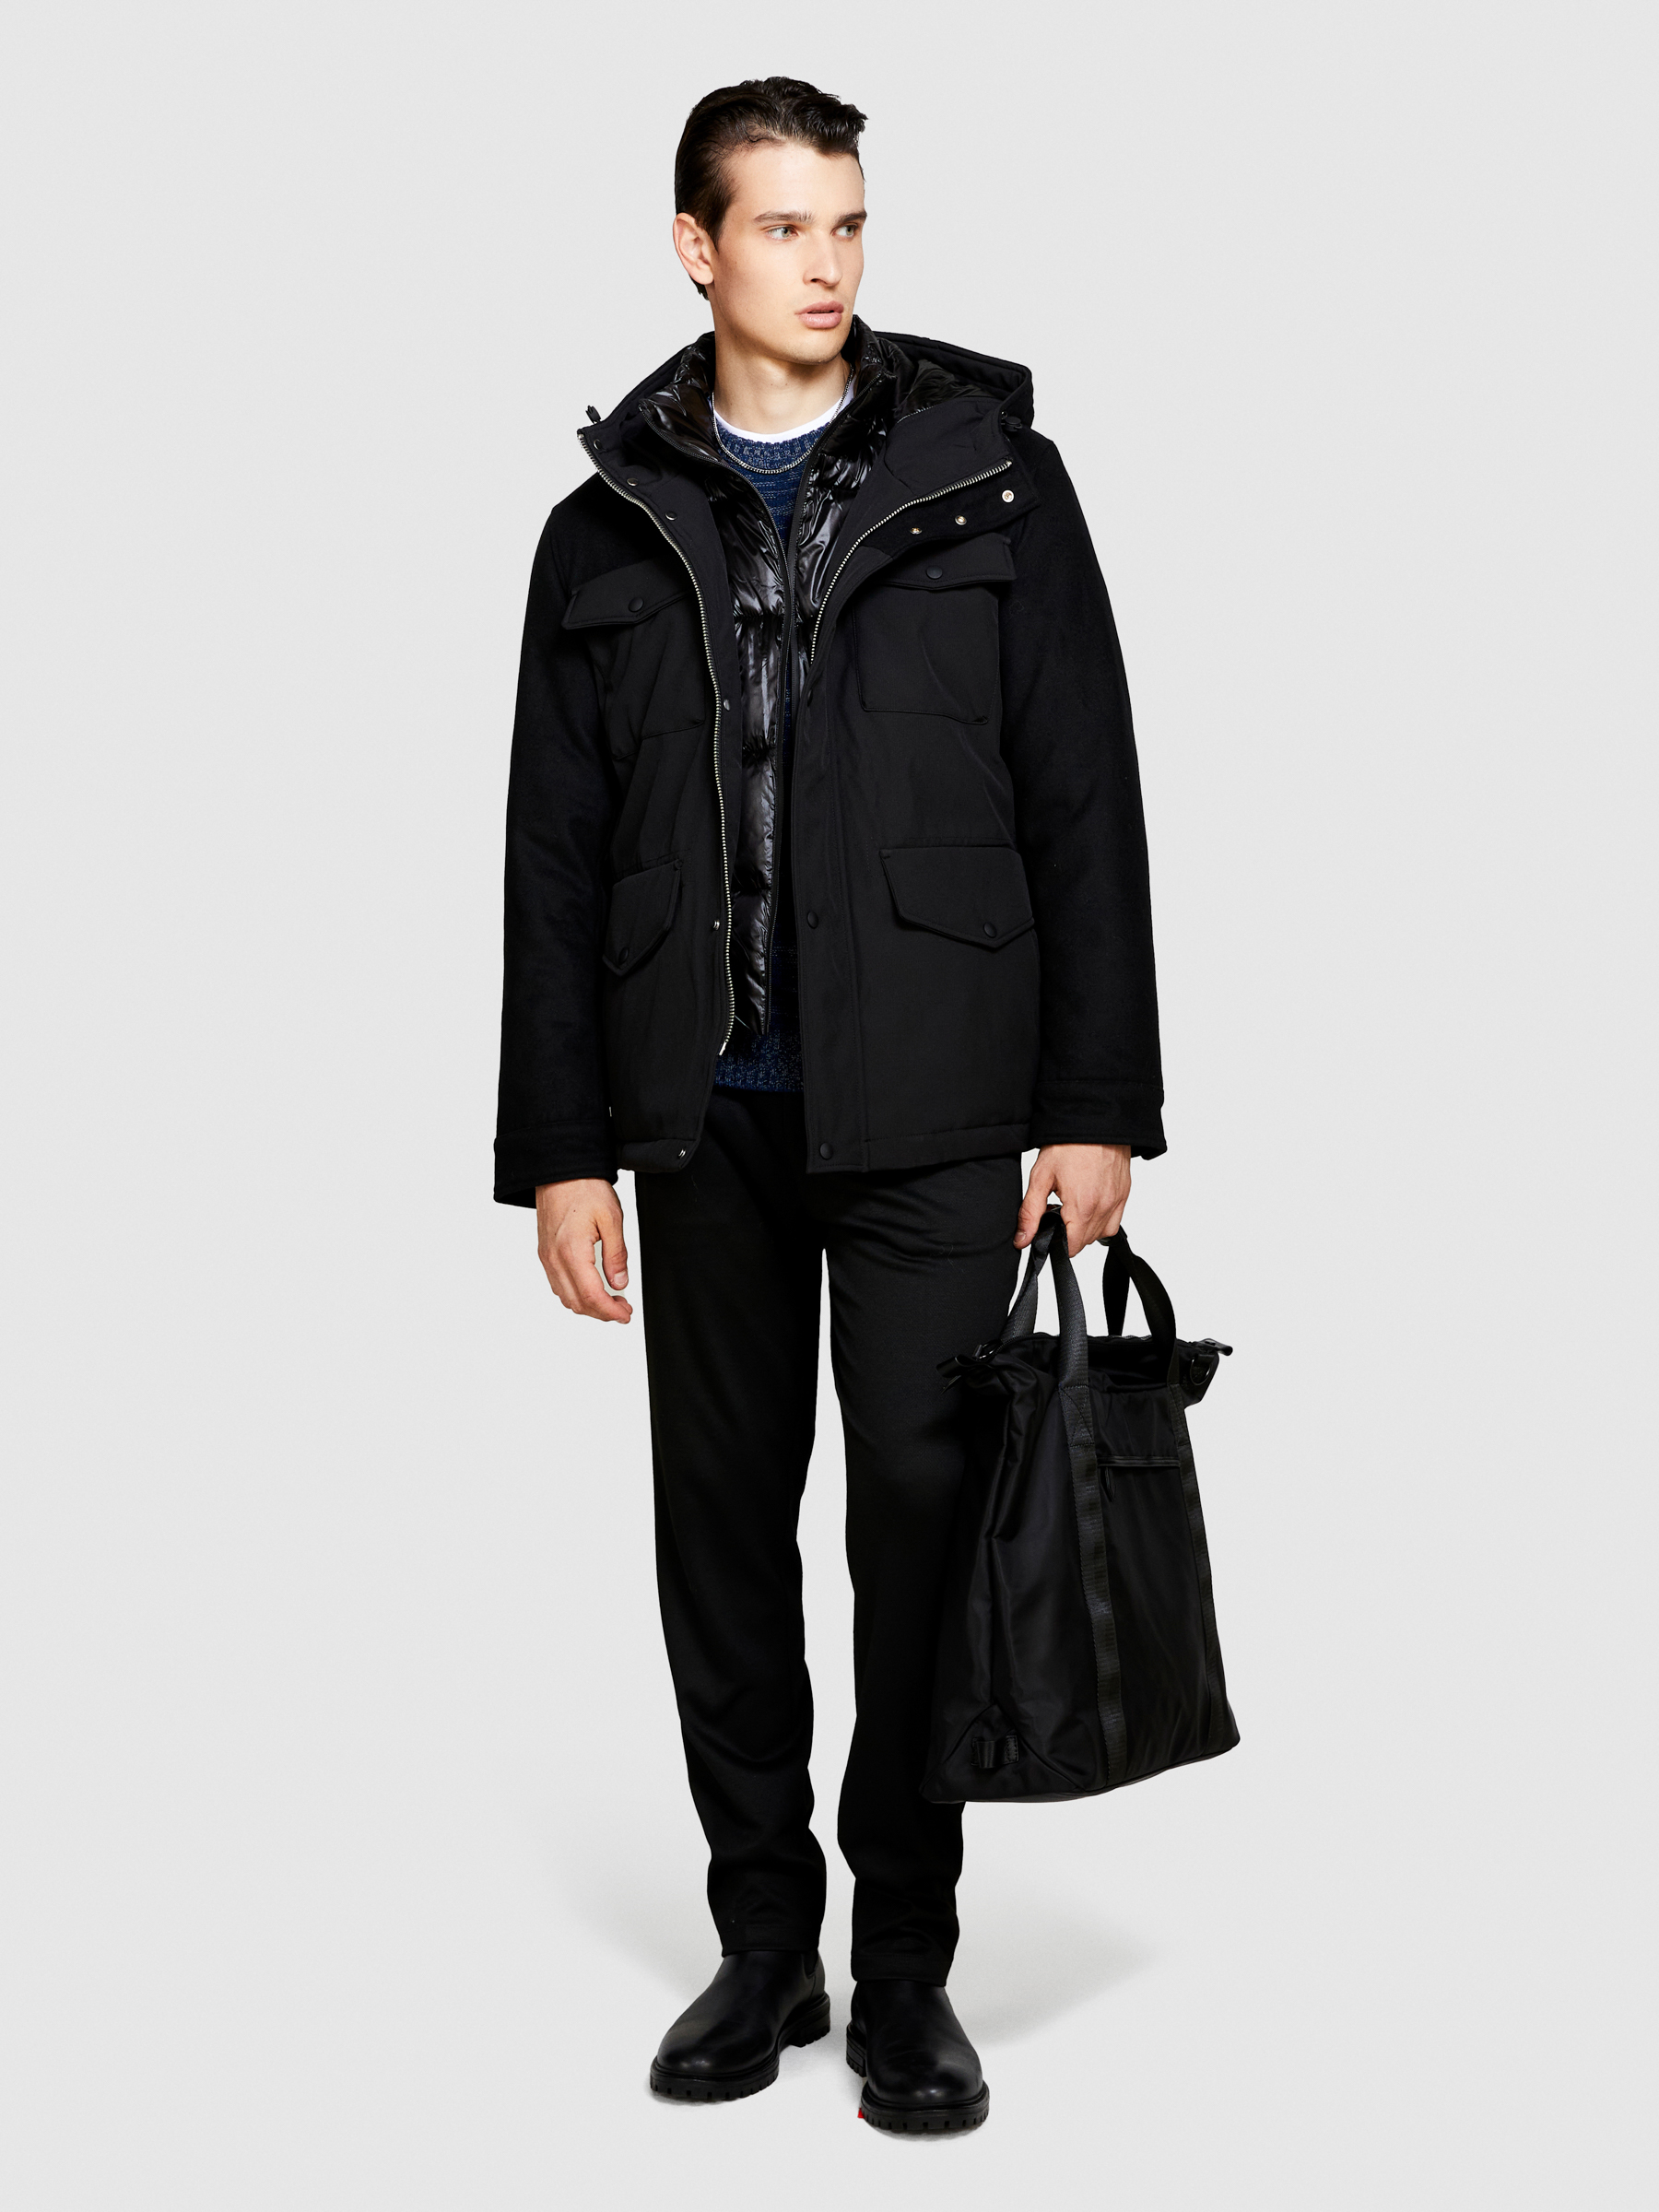 Sisley - Padded Jacket With Pockets, Man, Black, Size: 52